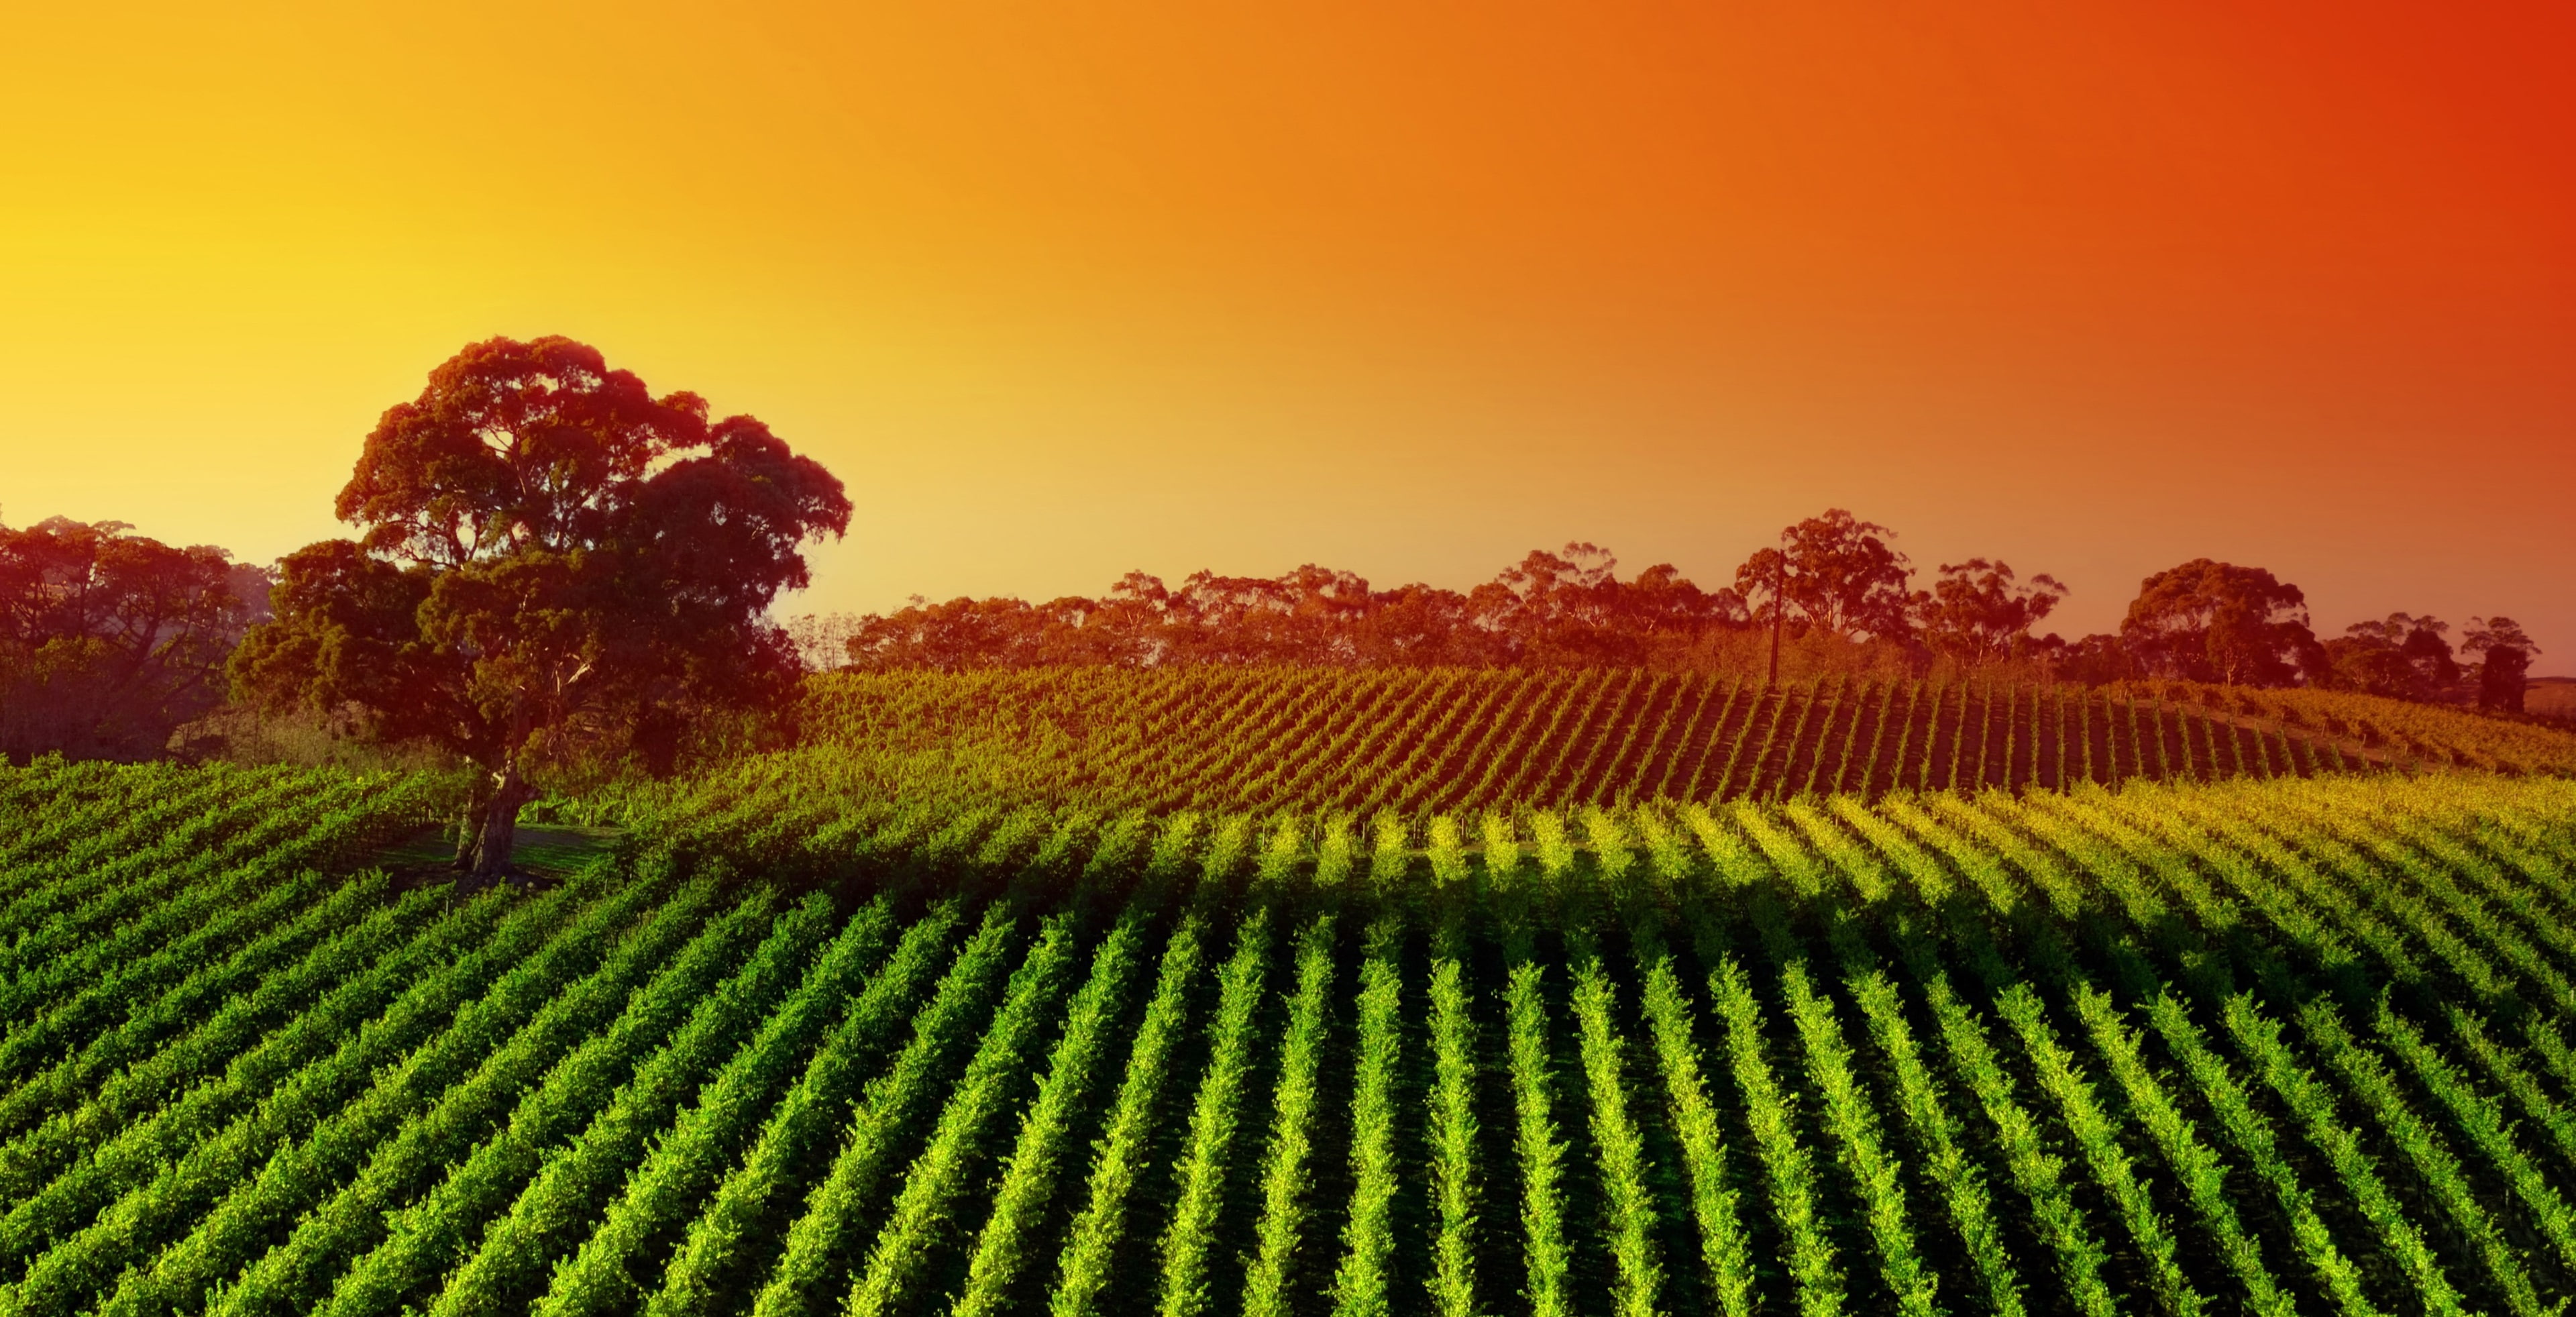 vineyard 4k cool image, field, rural scene, land, landscape